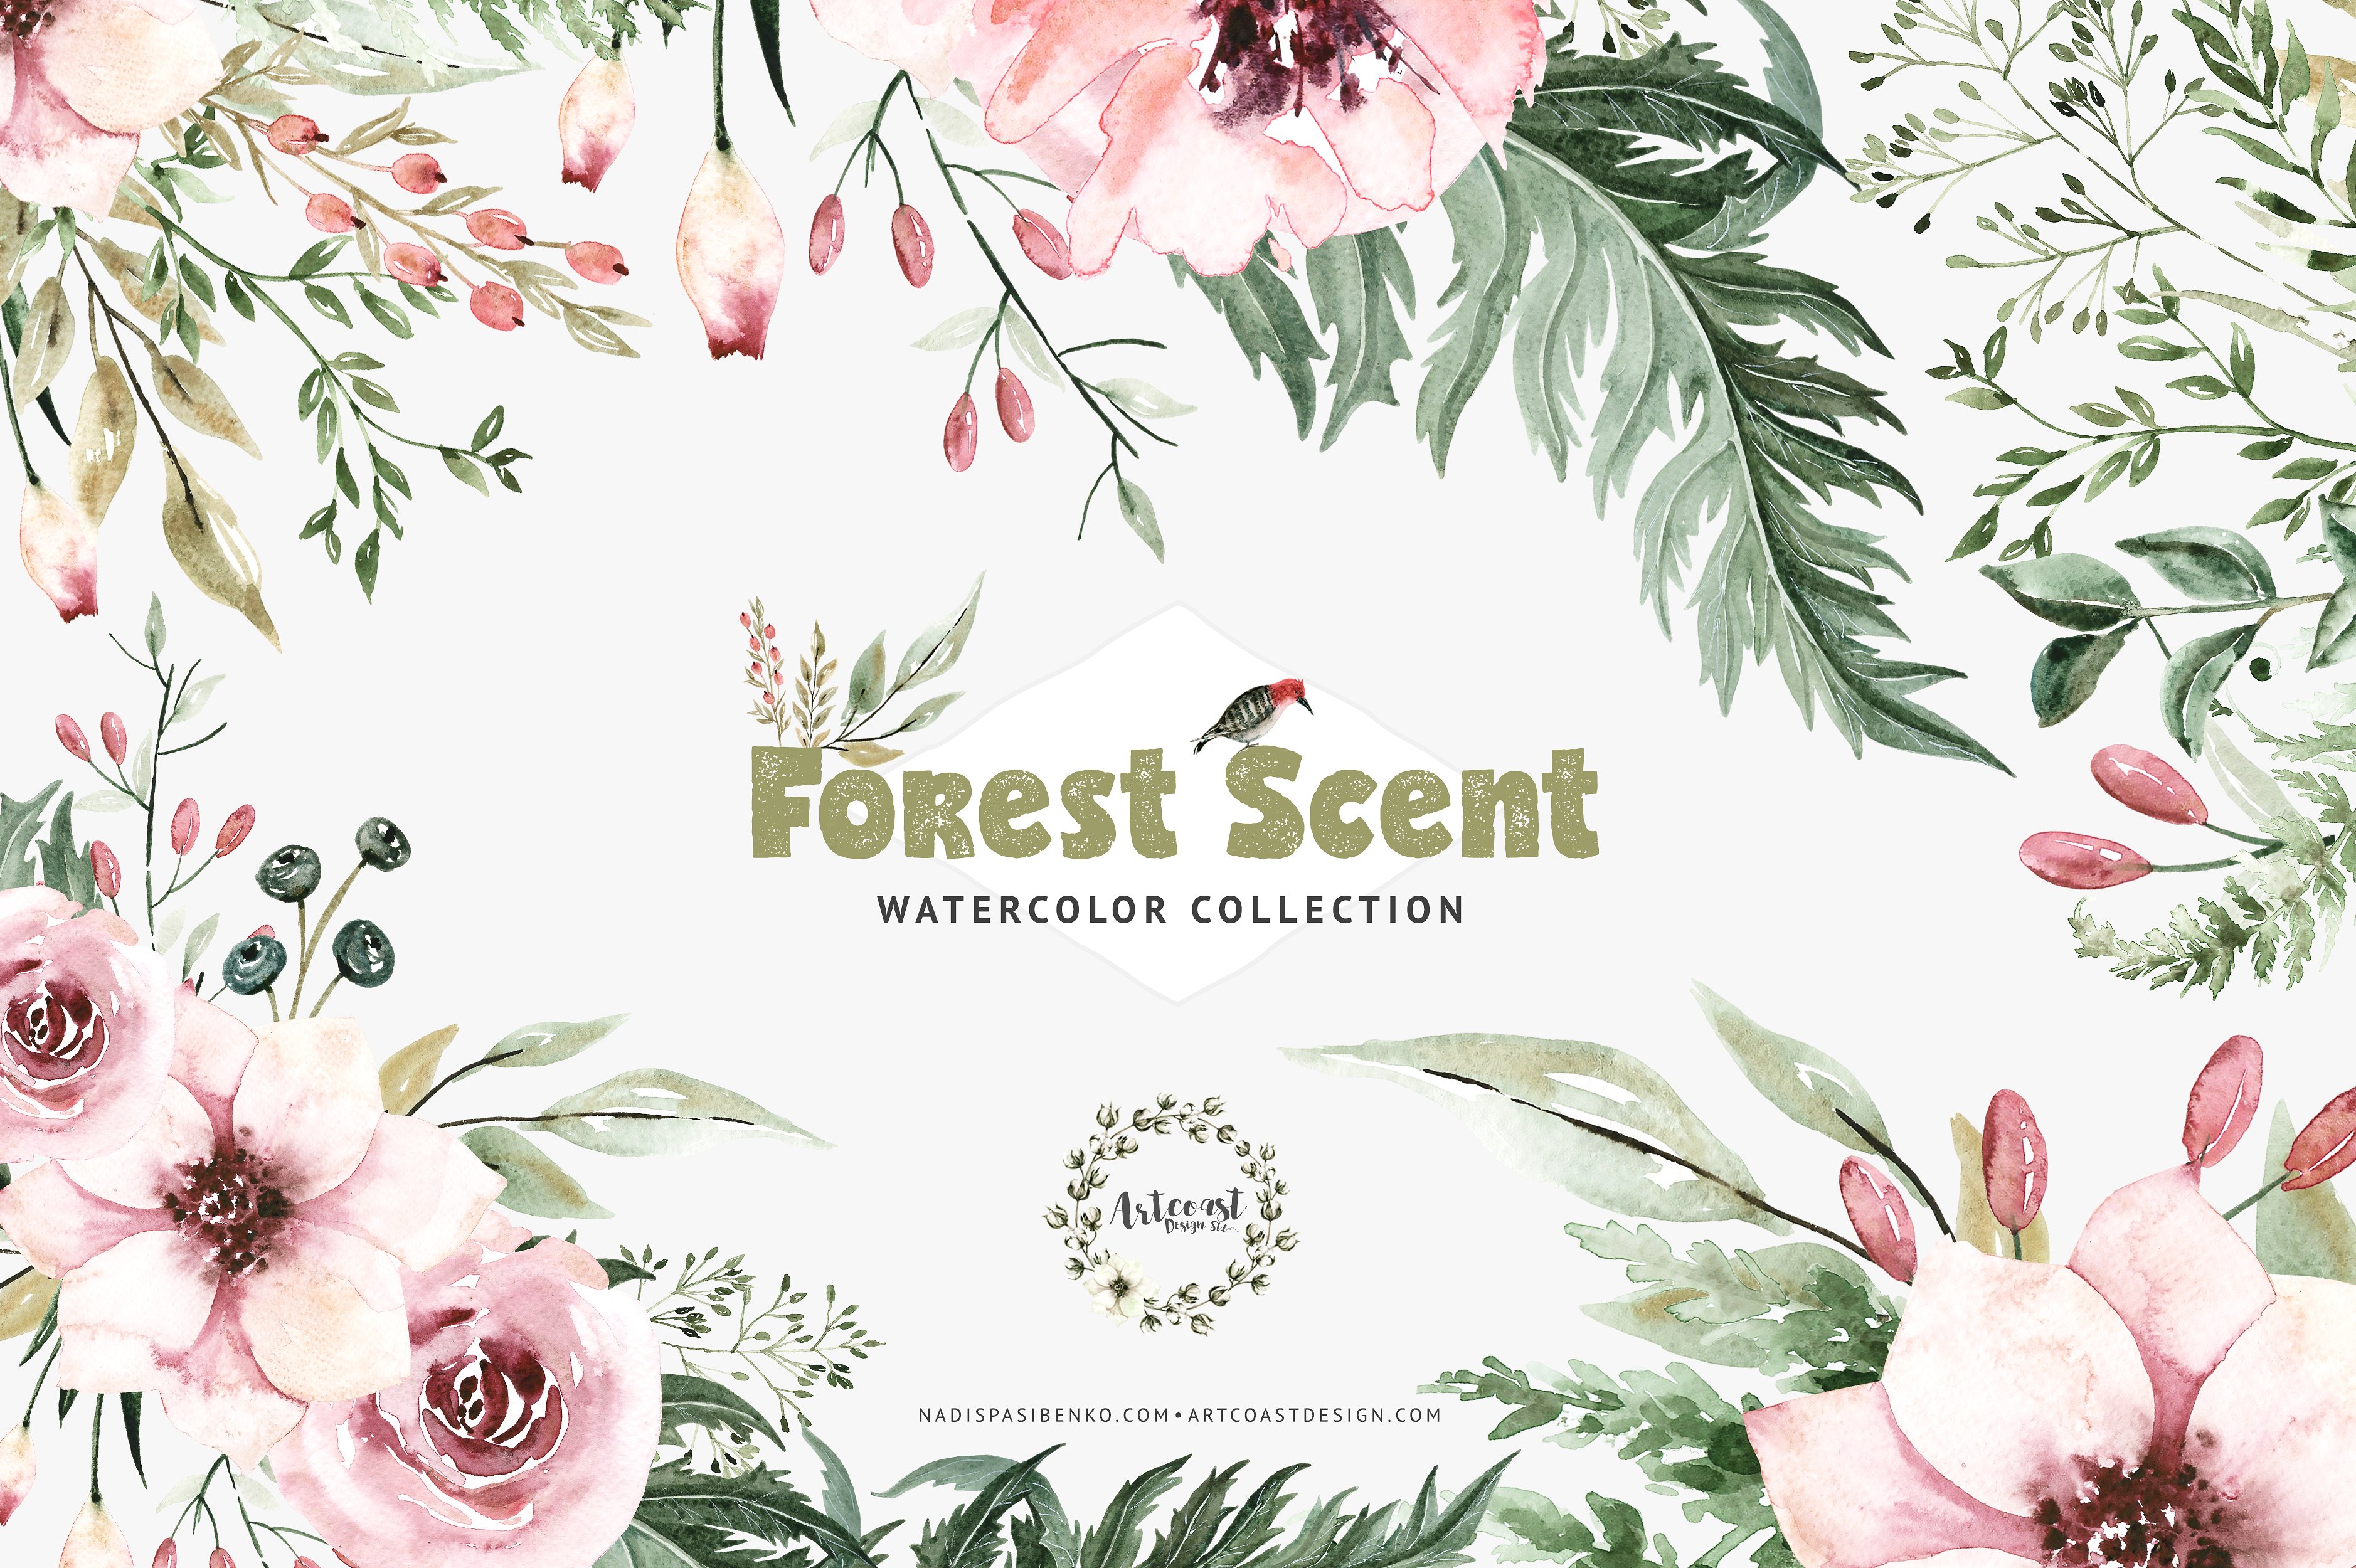 森林气息的水彩剪贴画 Watercolor Forest Scent插图